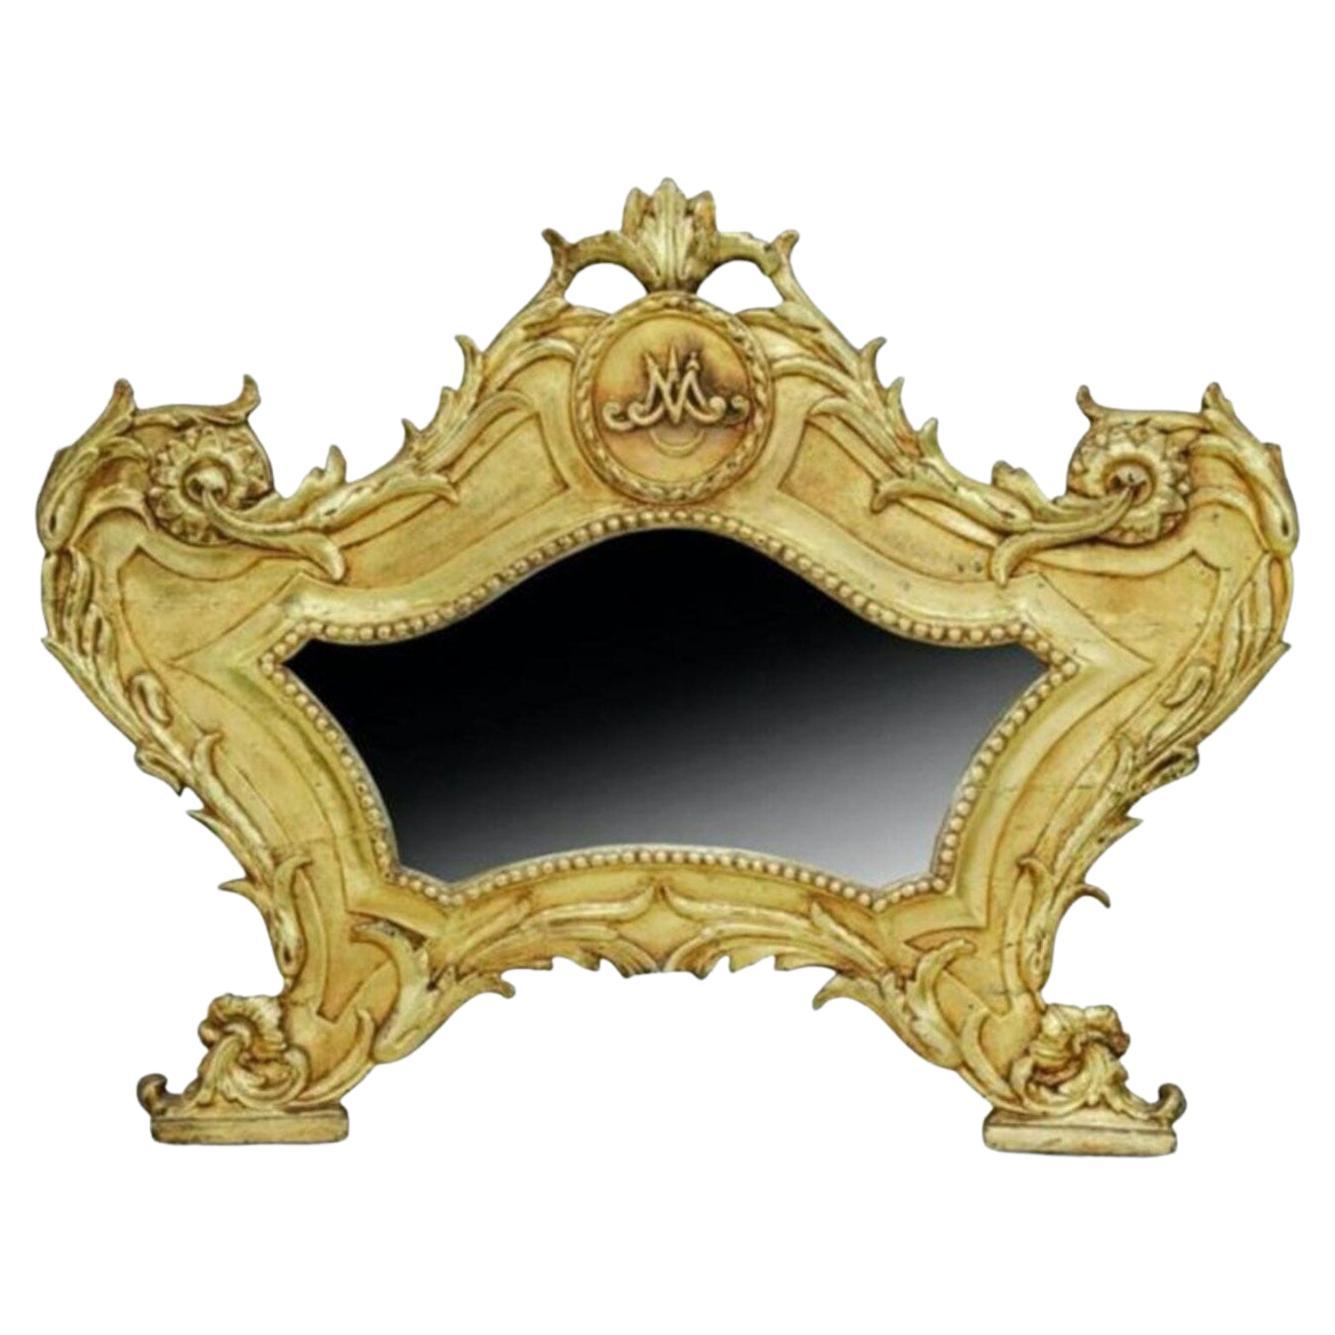 Miroir en bois doré Carta Gloria d'époque baroque italienne du 18ème siècle